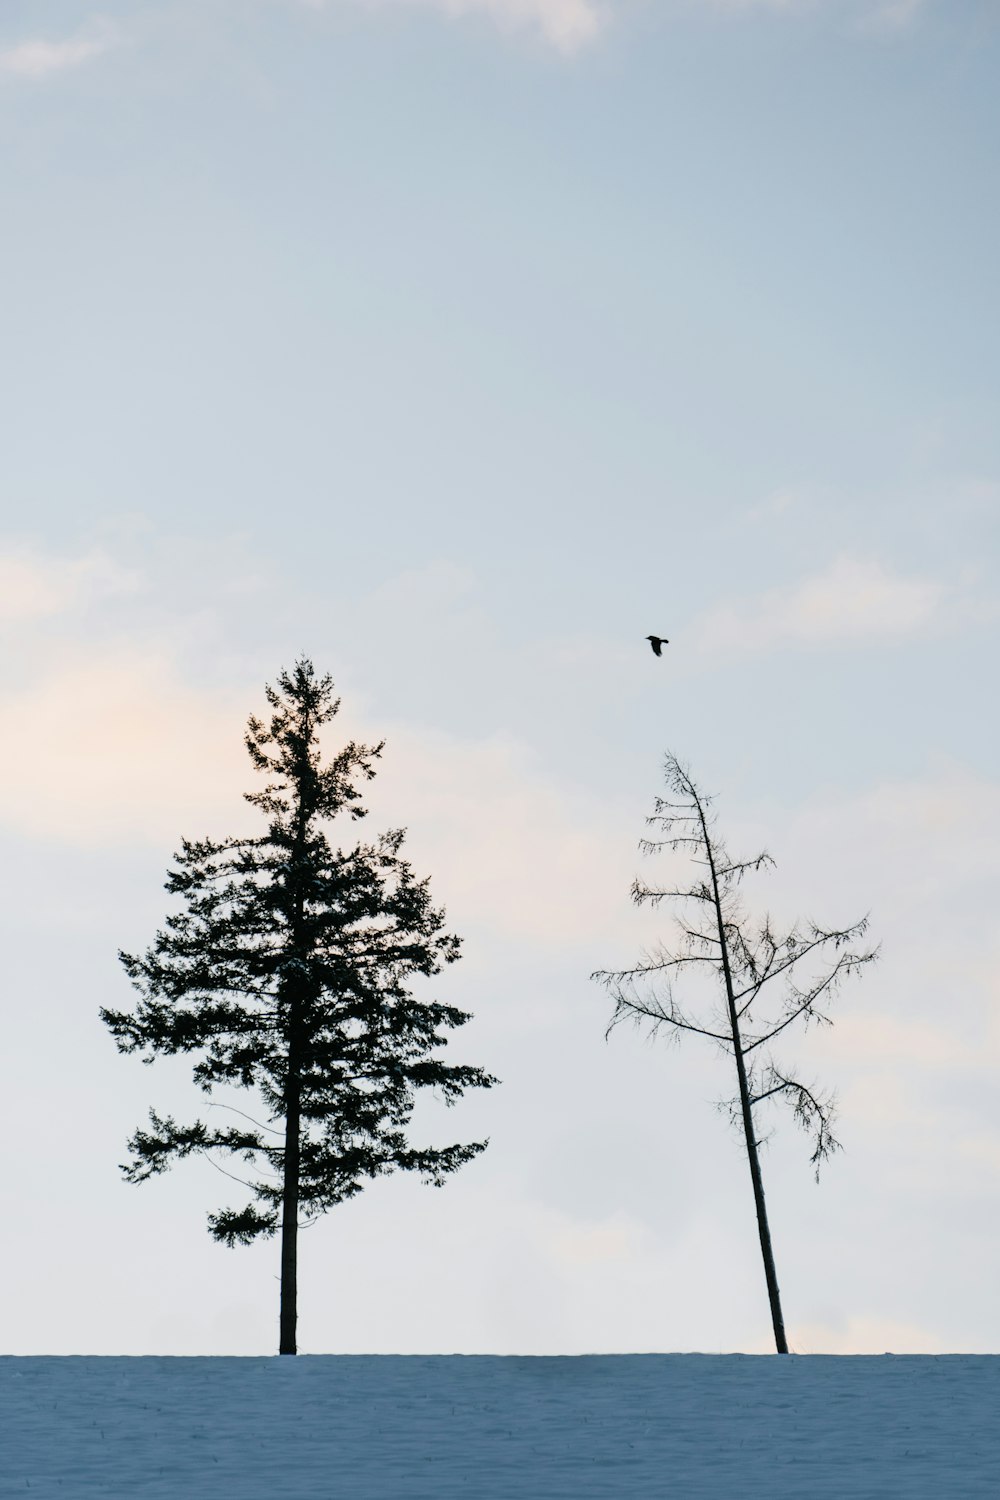 pájaro volando sobre árboles verdes durante el día